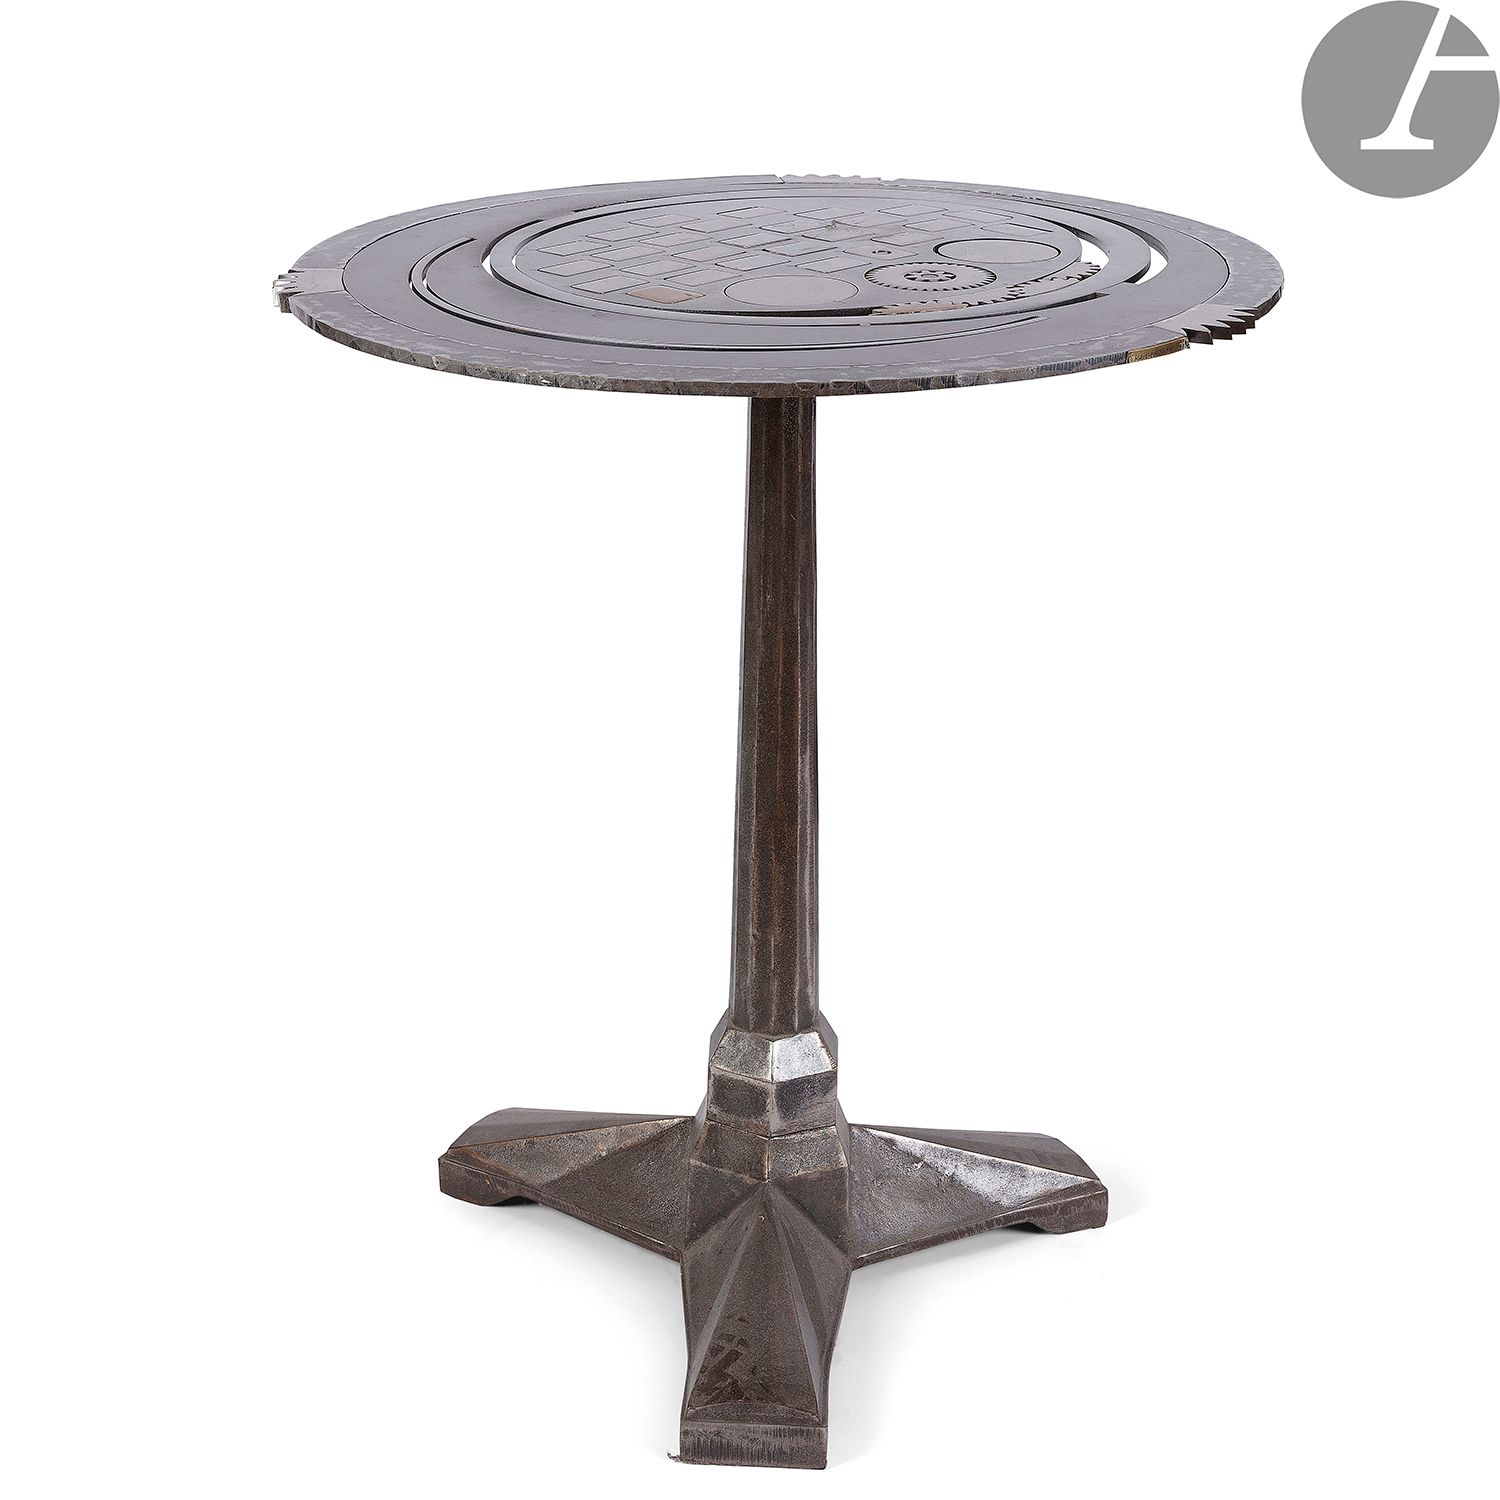 Null 
卡尔-胡戈-马斯(20-21世纪)

台阶式桌子GT 02

基座式桌子。顶部为焊接钢，镂空，并带有齿轮，安装在一个装饰艺术时期的铸铁脚上。 

签&hellip;